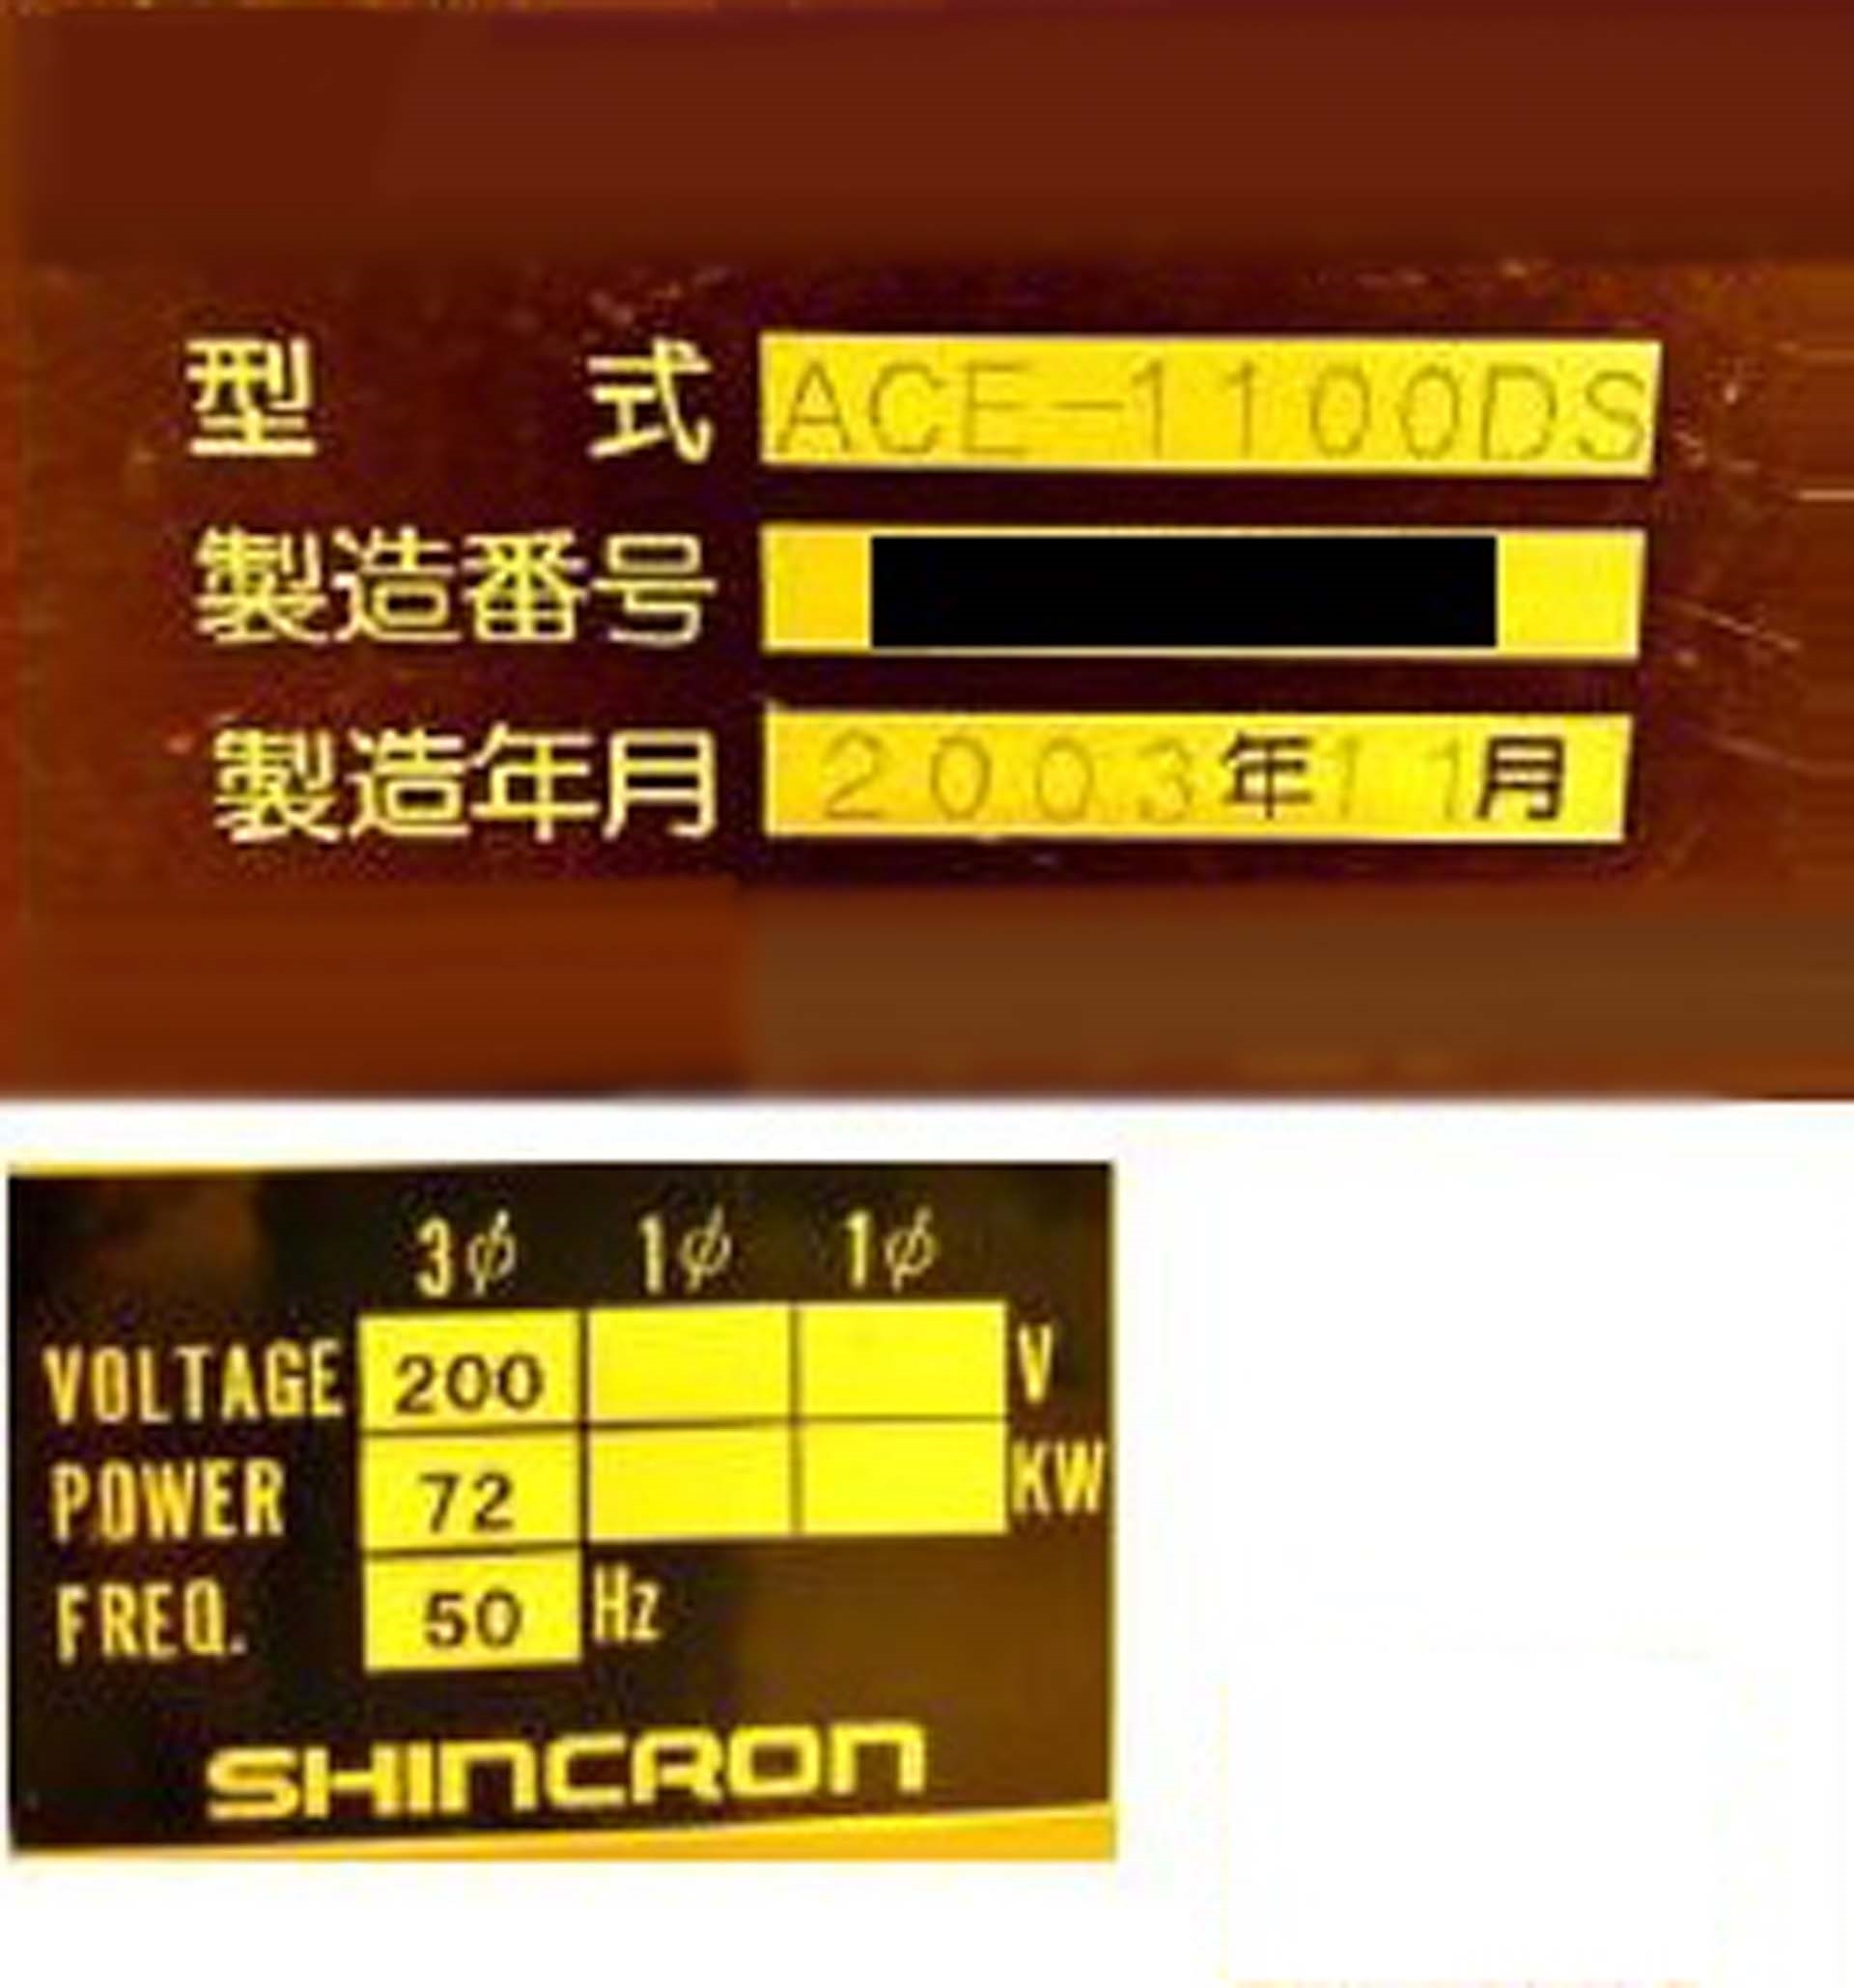 사진 사용됨 SHINCRON ACE-1100DS 판매용